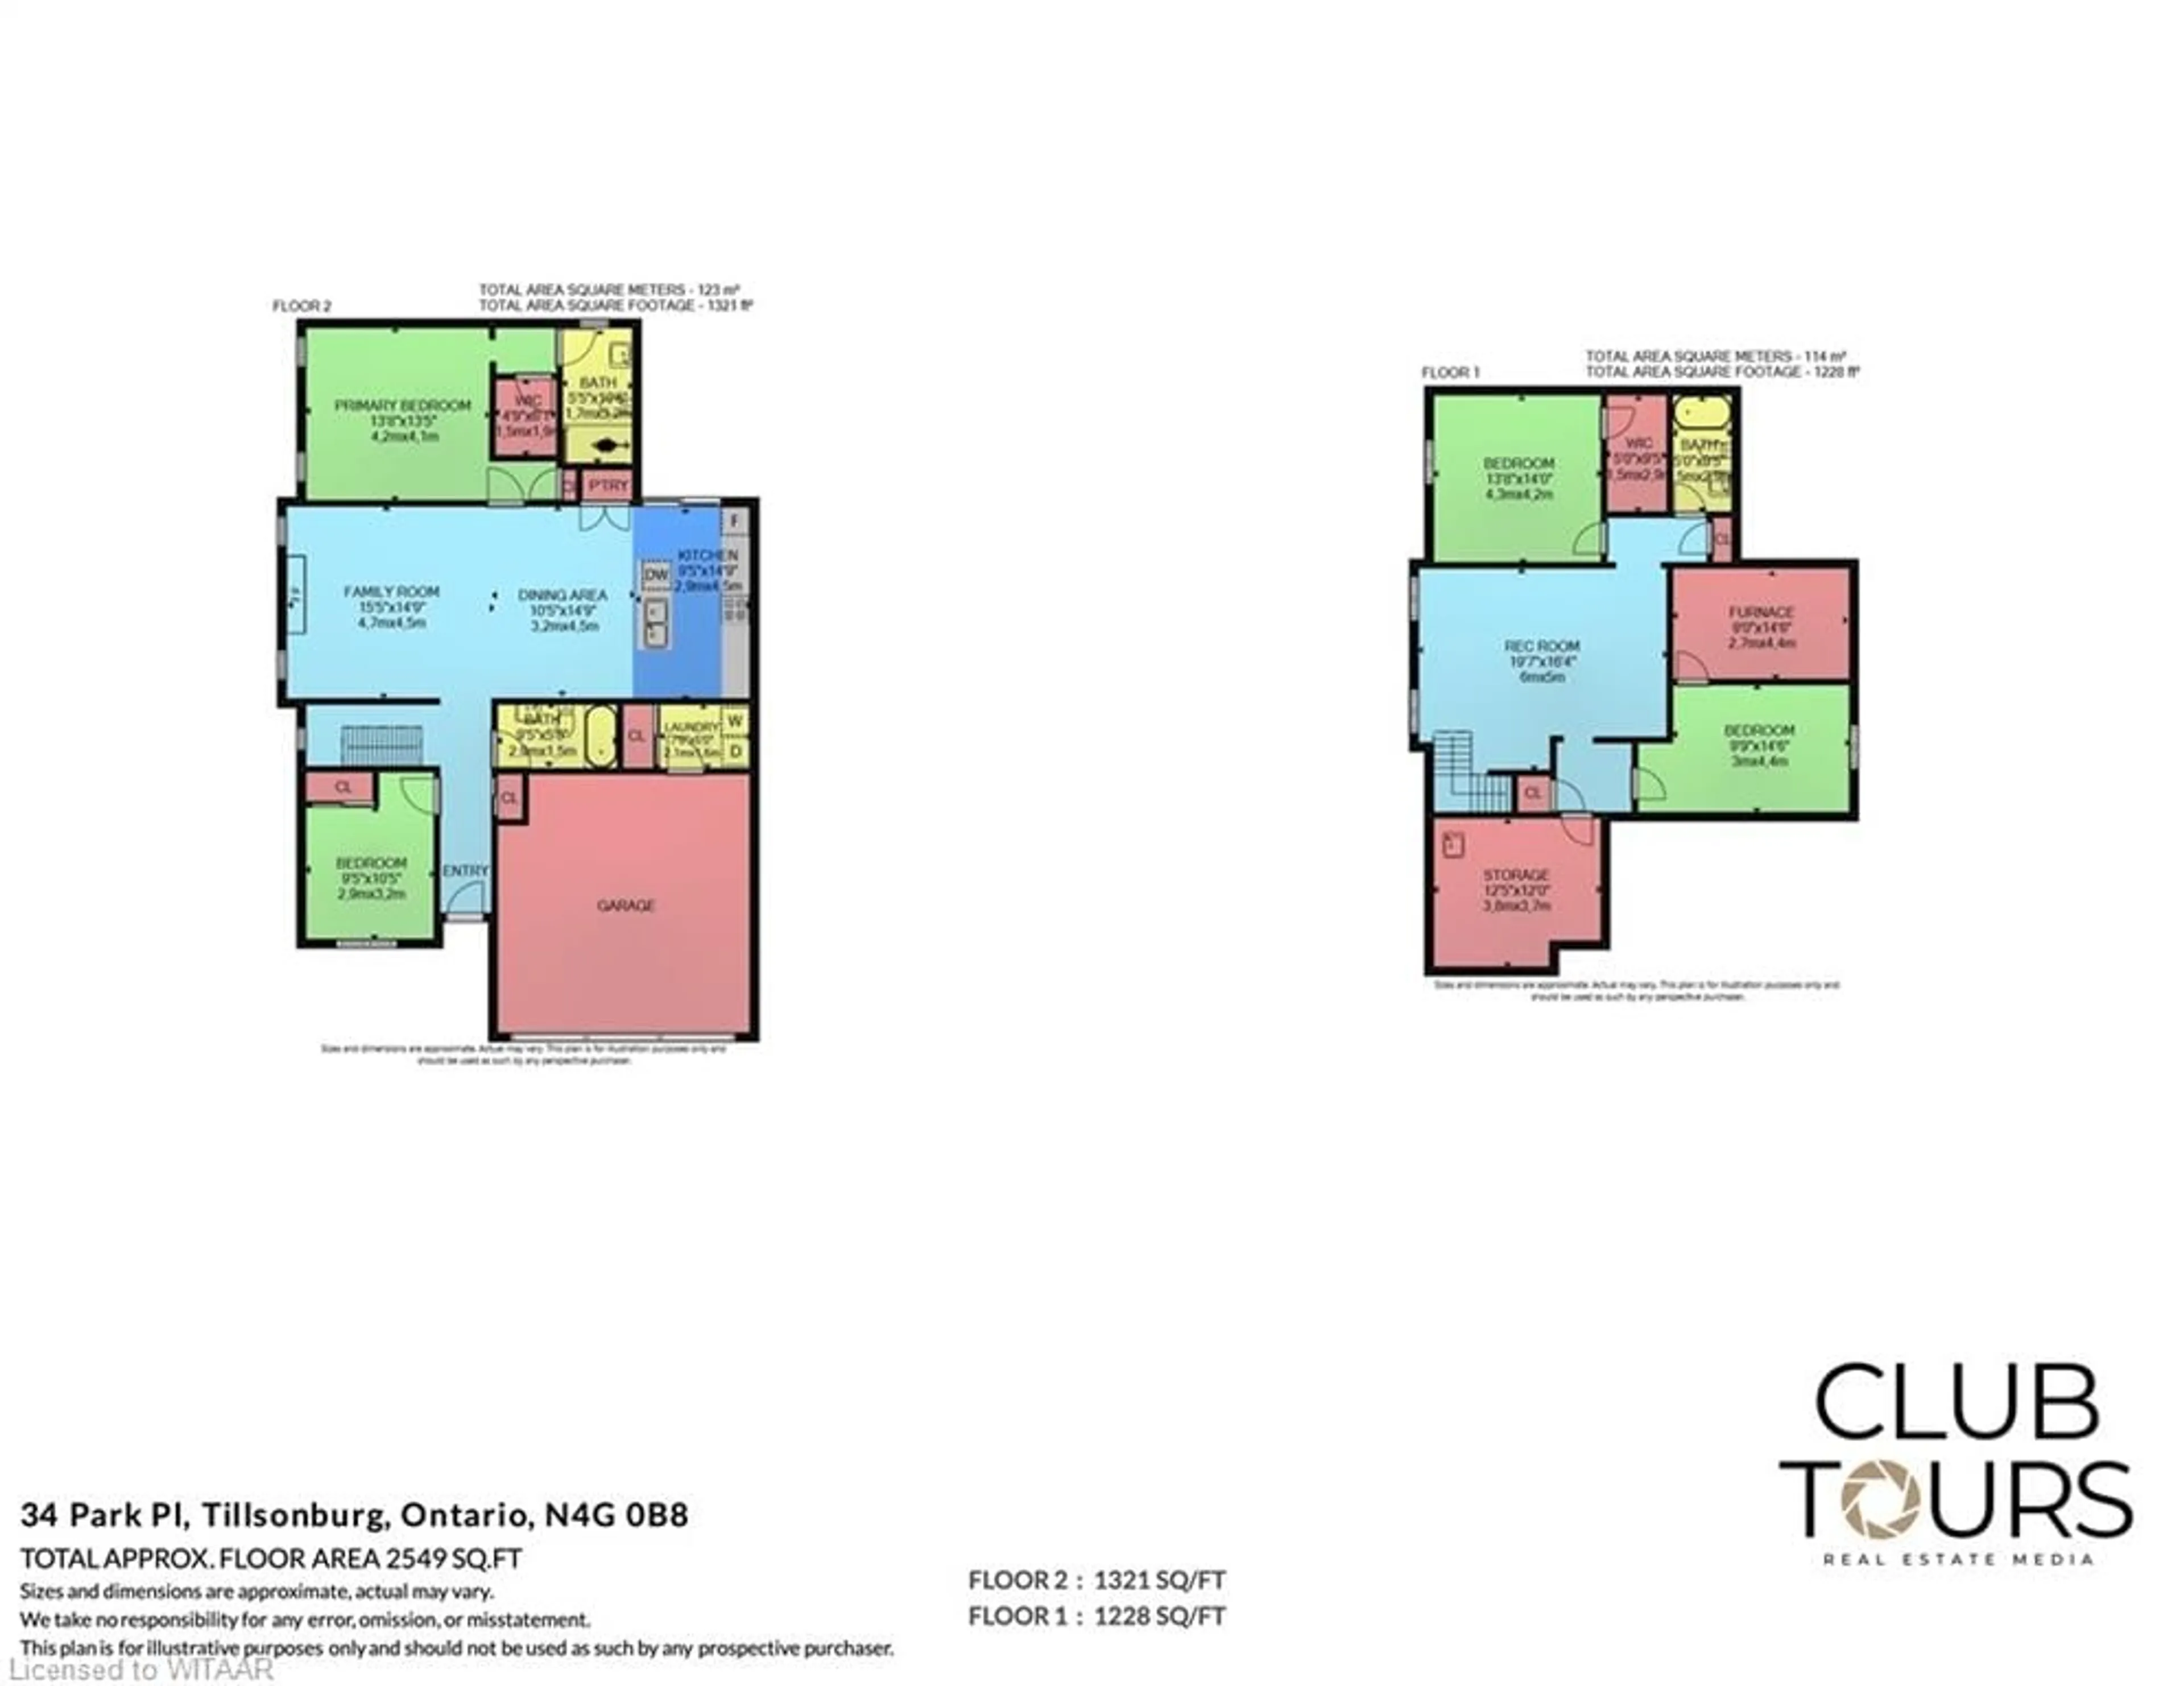 Floor plan for 34 Park Pl, Tillsonburg Ontario N4G 0B8